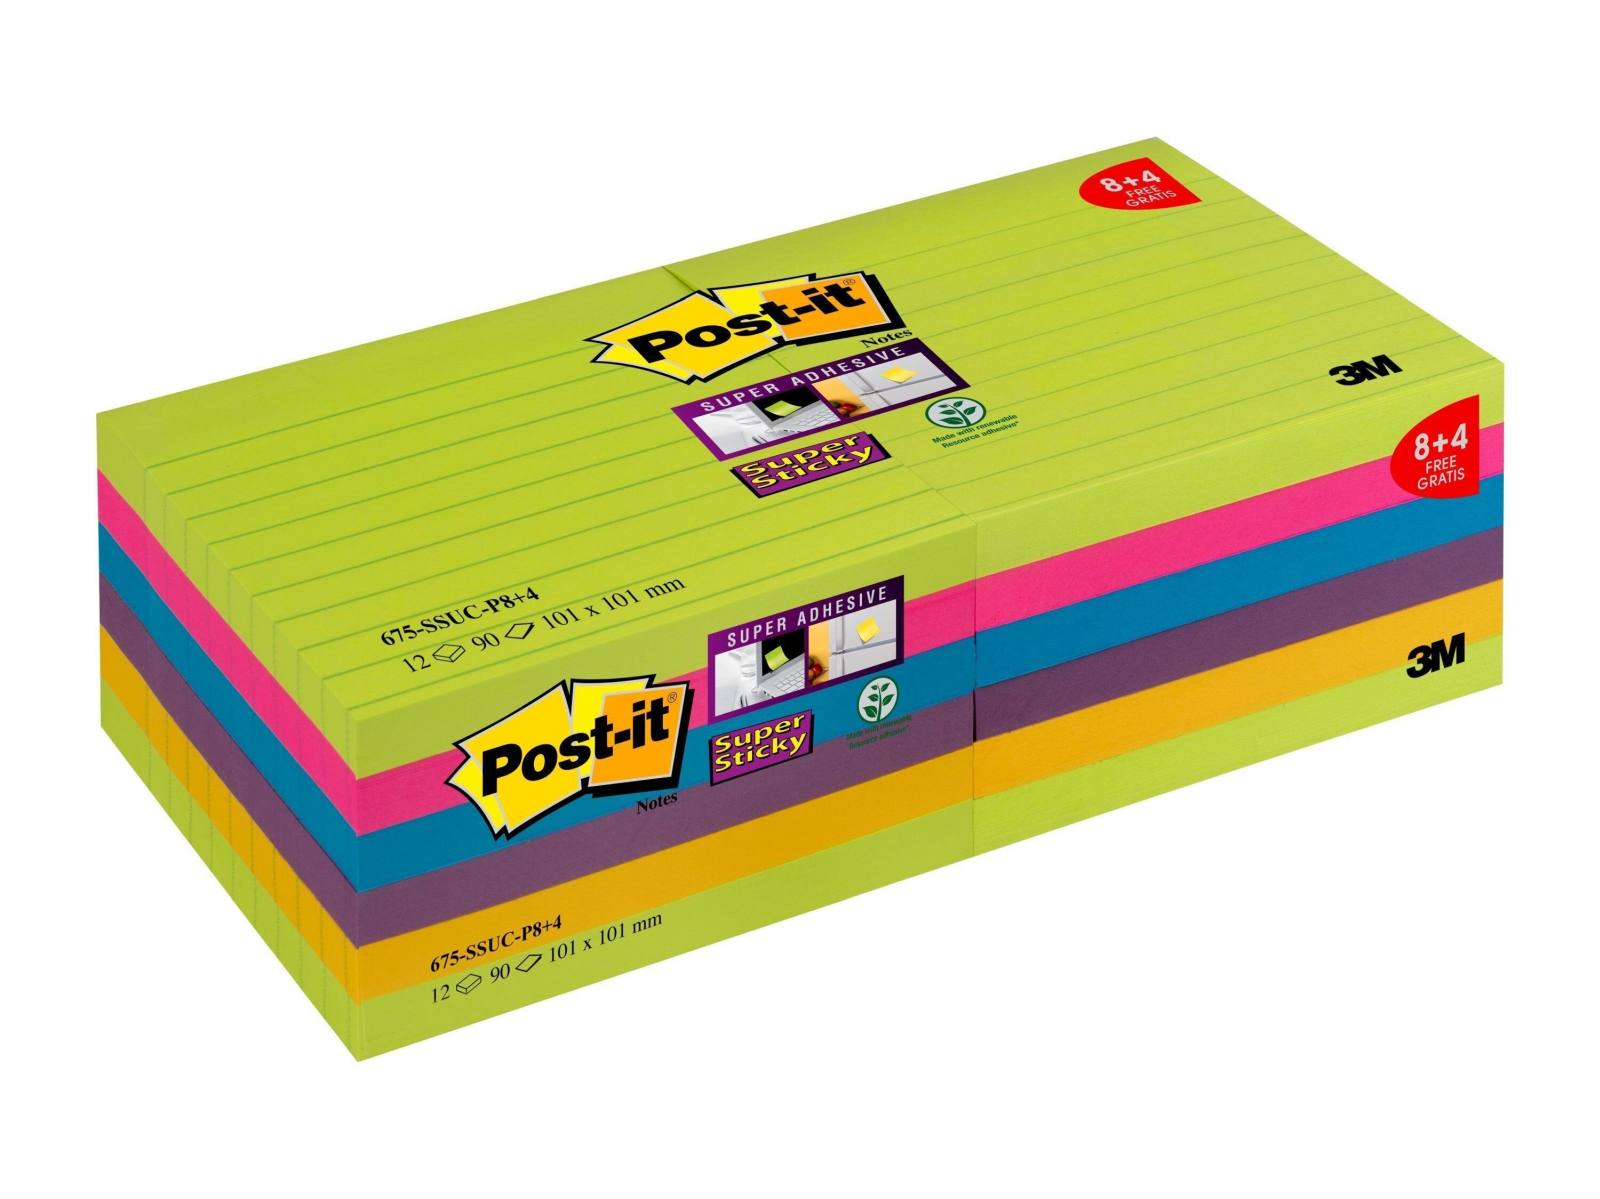 3M Post-it Super Sticky Notes Promotion 4690-SSUC-P4+2 6 blokken van 90 vellen elk voor een speciale prijs, neongroen, ultra roze, geel, blauw, neon oranje, 101 mm x 152 mm, gelinieerd, PEFC gecertificeerd